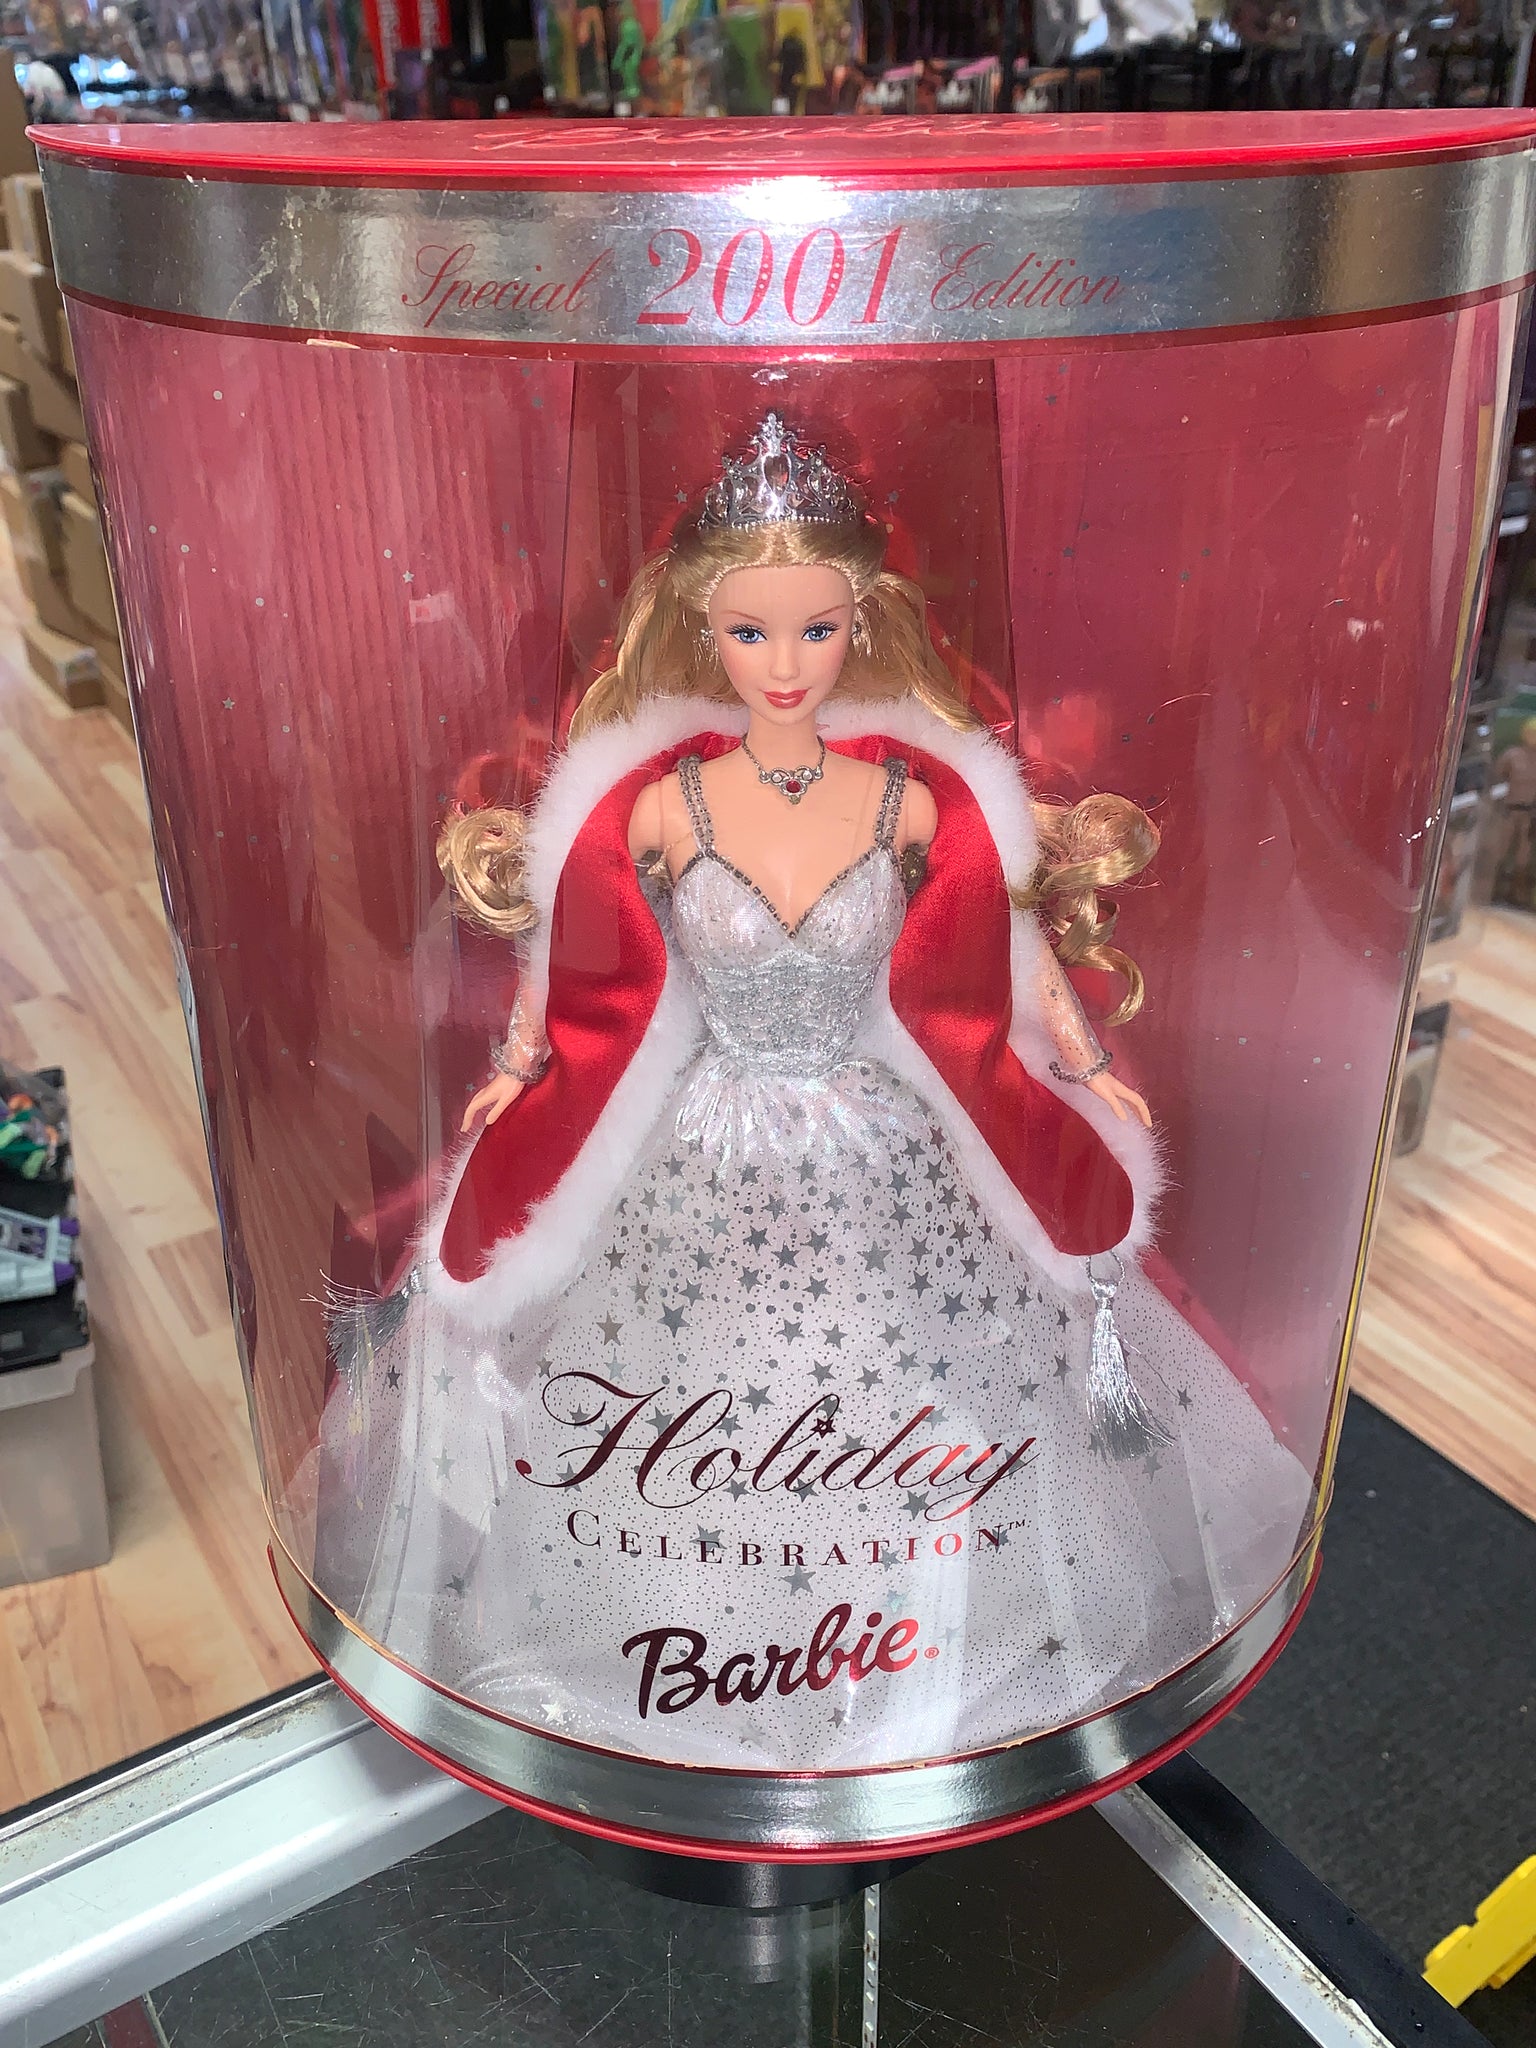 Holiday 2001 Celabration Barbie 50304 (Mattel, Vintage Barbie